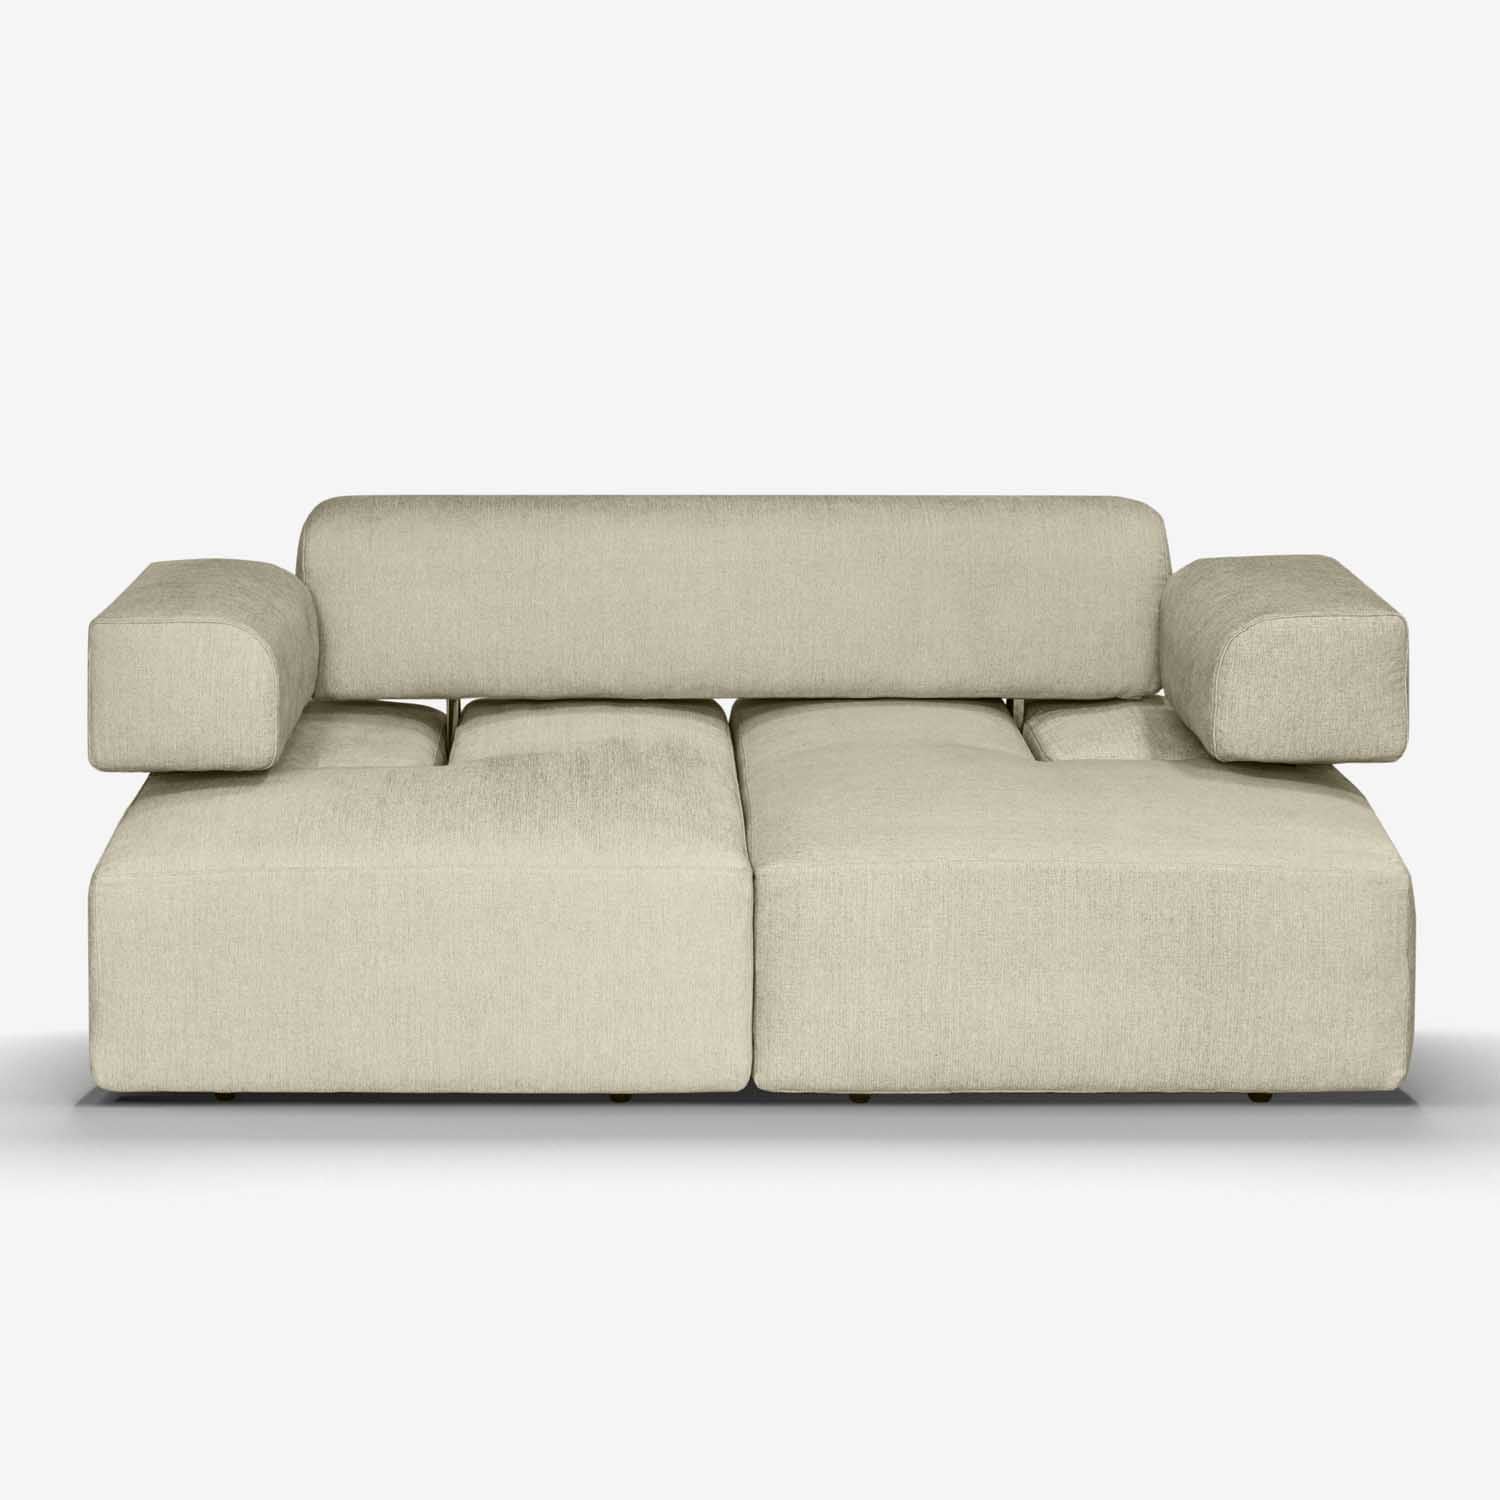 Customizable luxury sofa with beechwood frame.